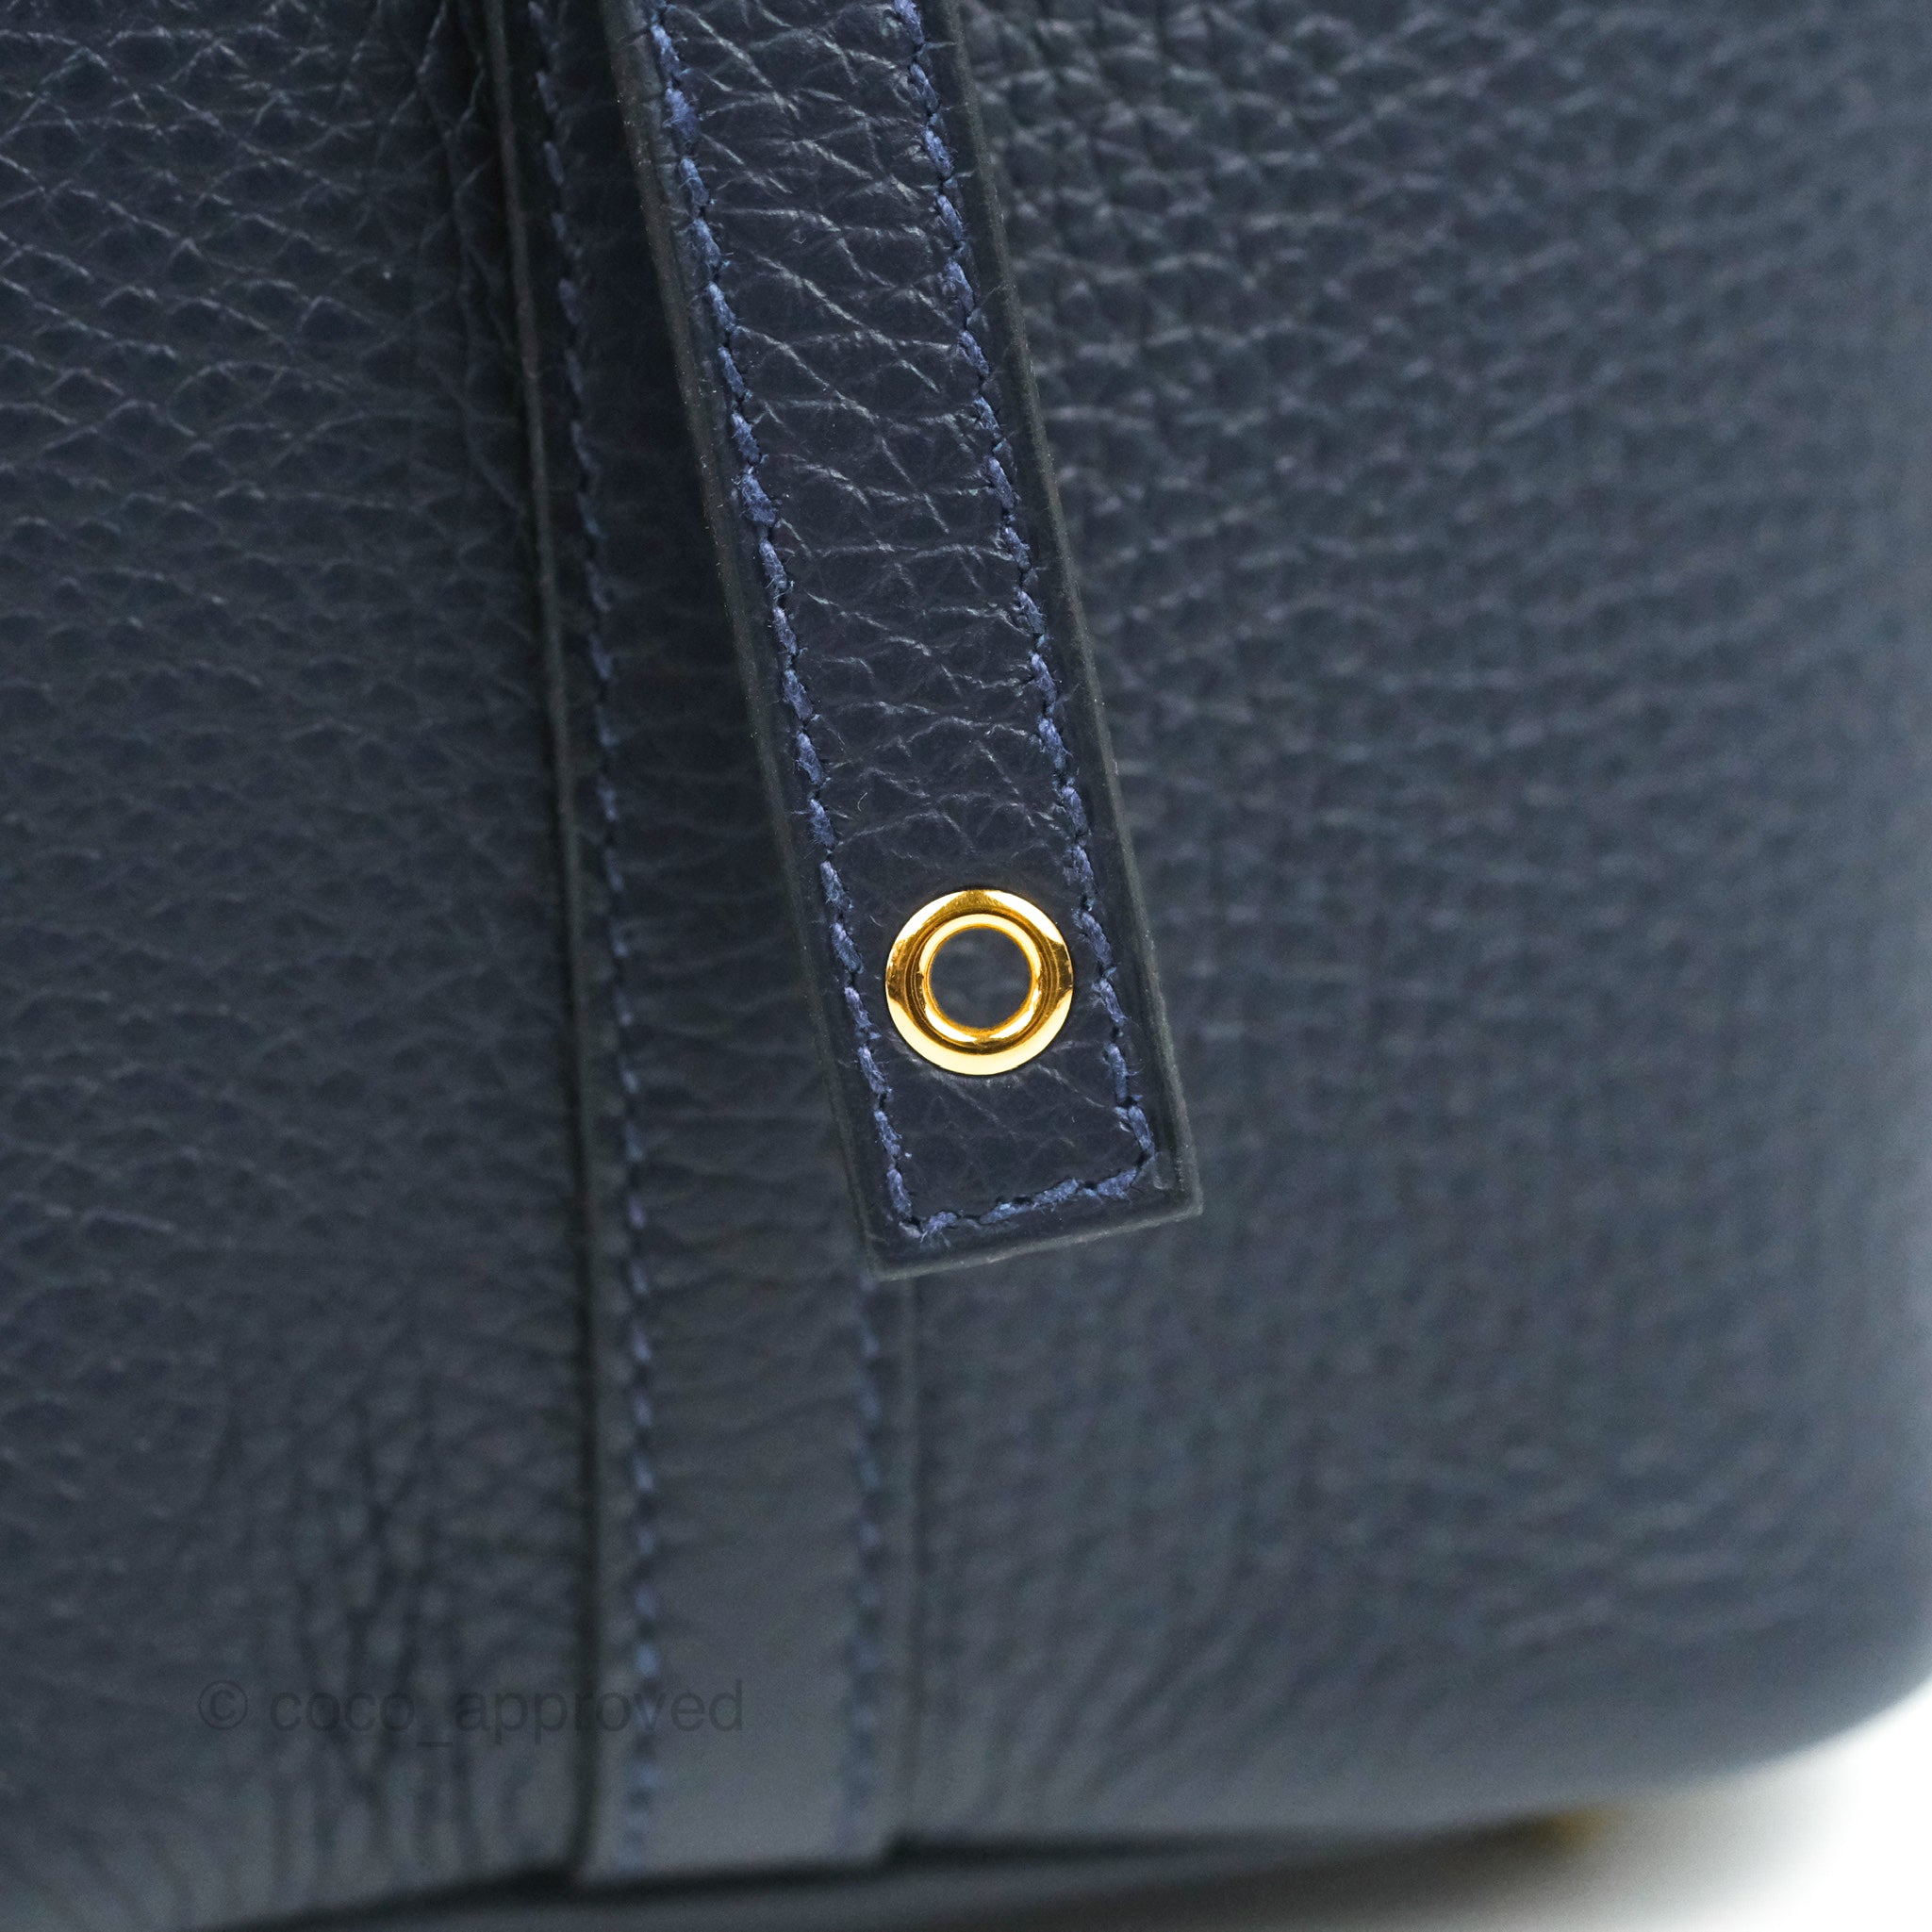 Hermes Picotin 18 Lock Bag Clemence Blue Nuit/Rouge Sellier/Framboise